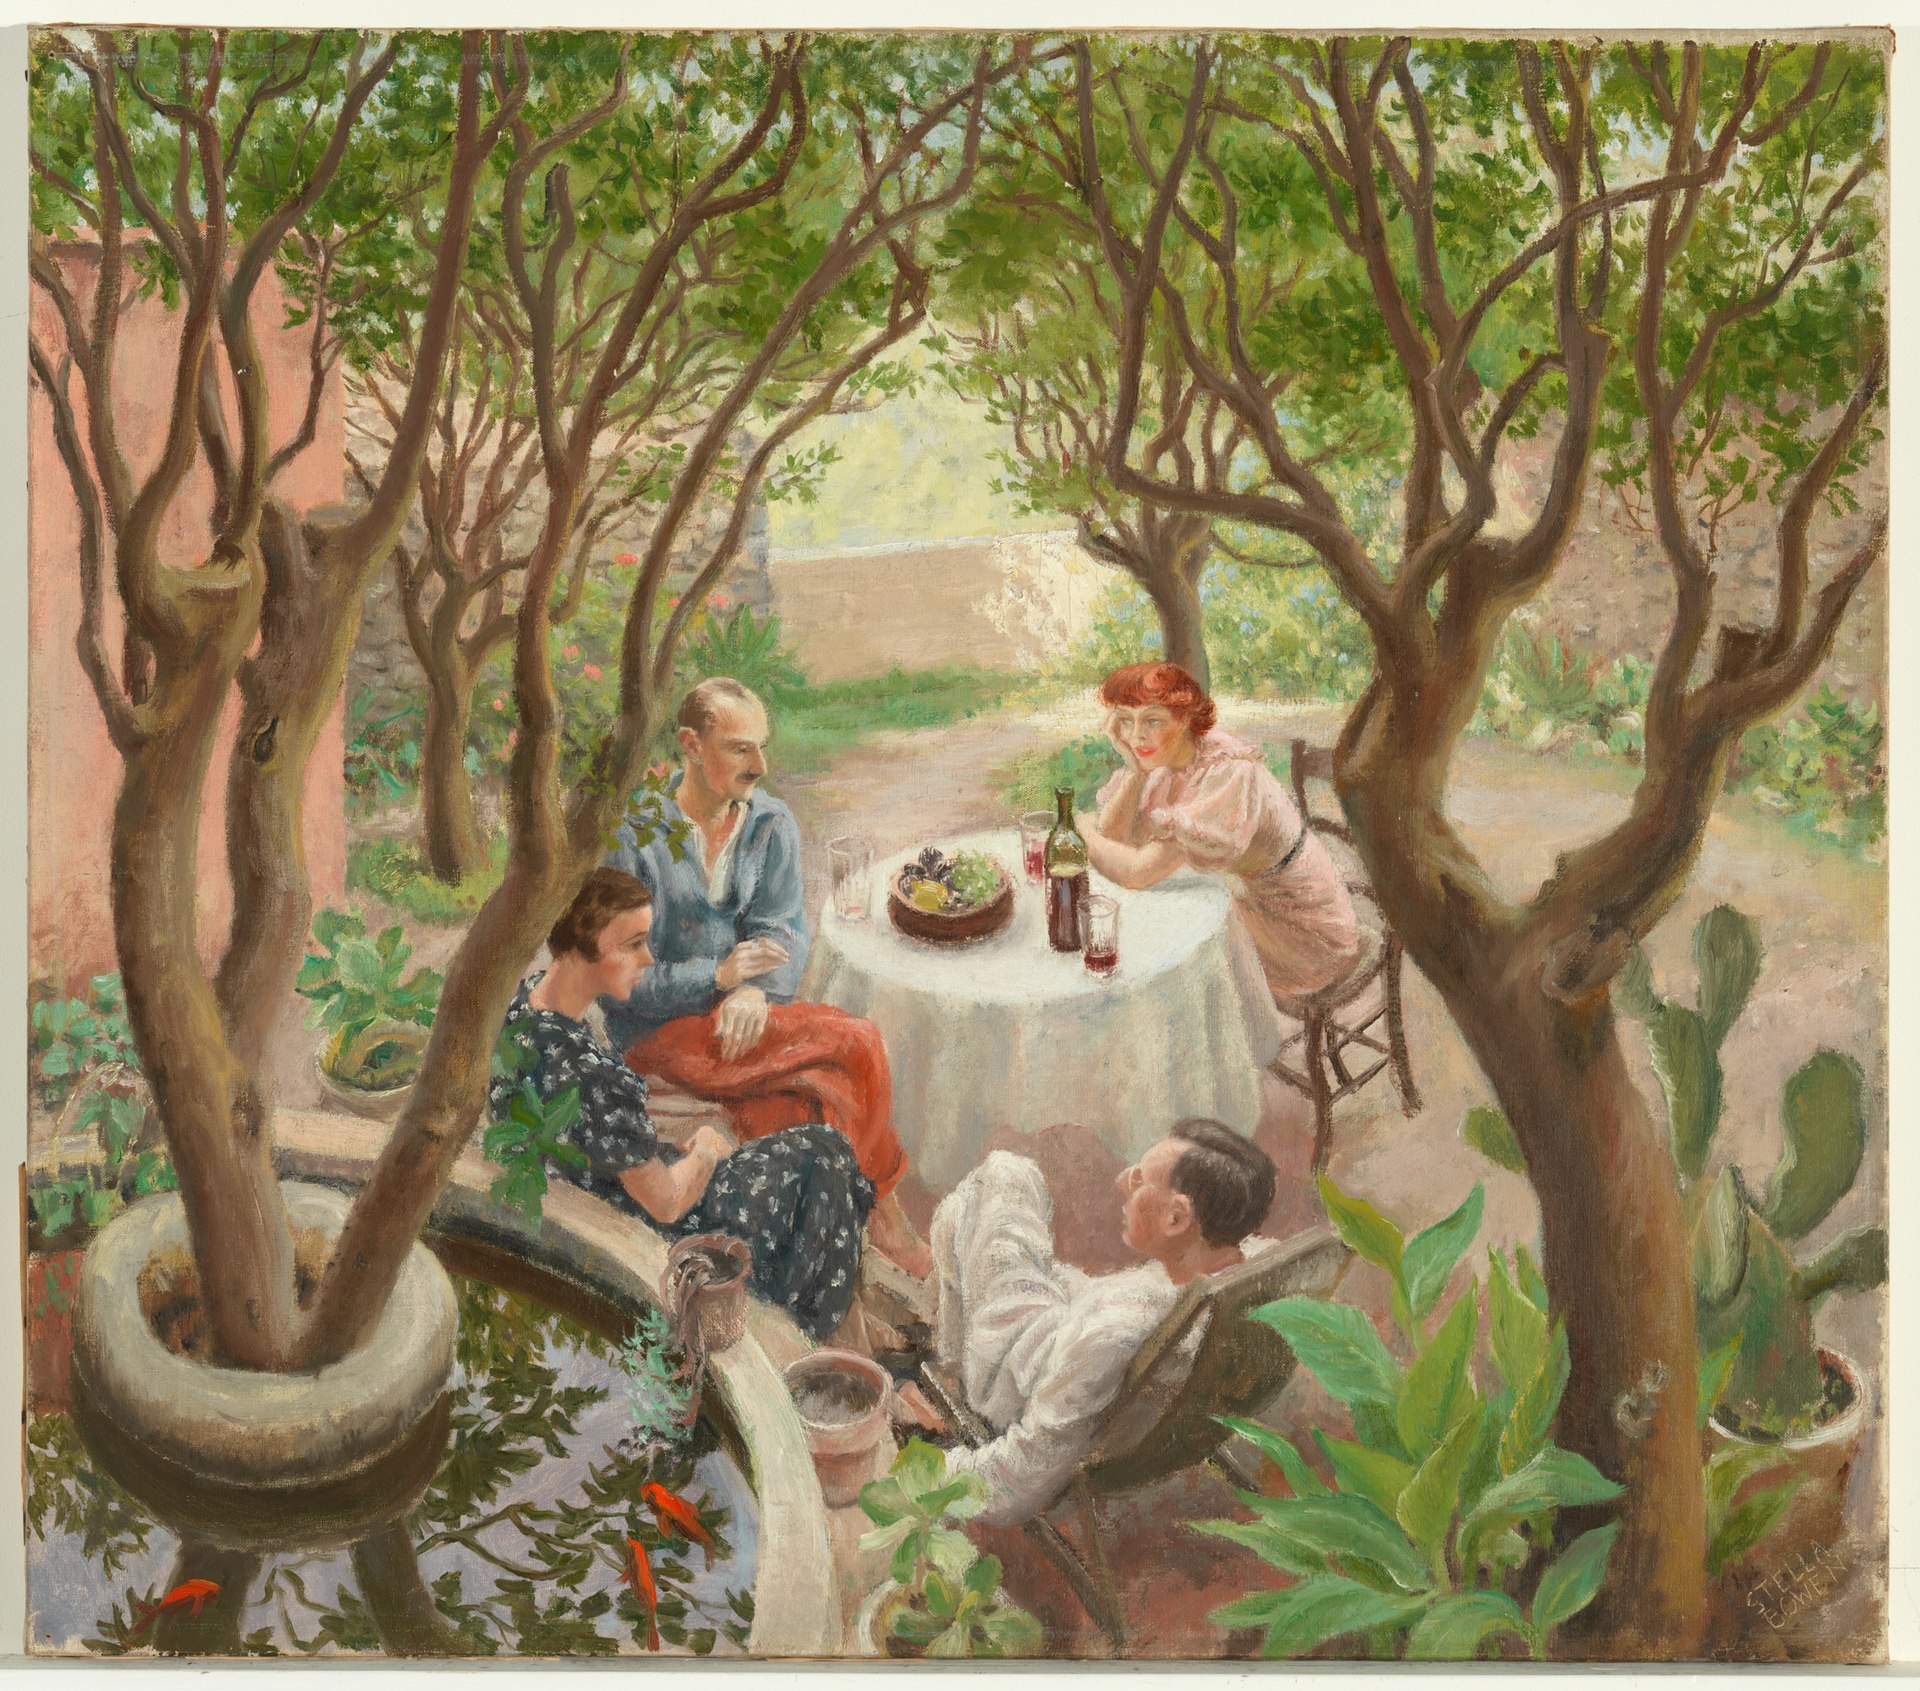 Provence Sohbeti, Cagnes-sur-Mer (orig. "Provençal Conver­sation, Cagnes-sur-Mer") by Stella Bowen - 1936 - 63.7 x 72.3 cm özel koleksiyon